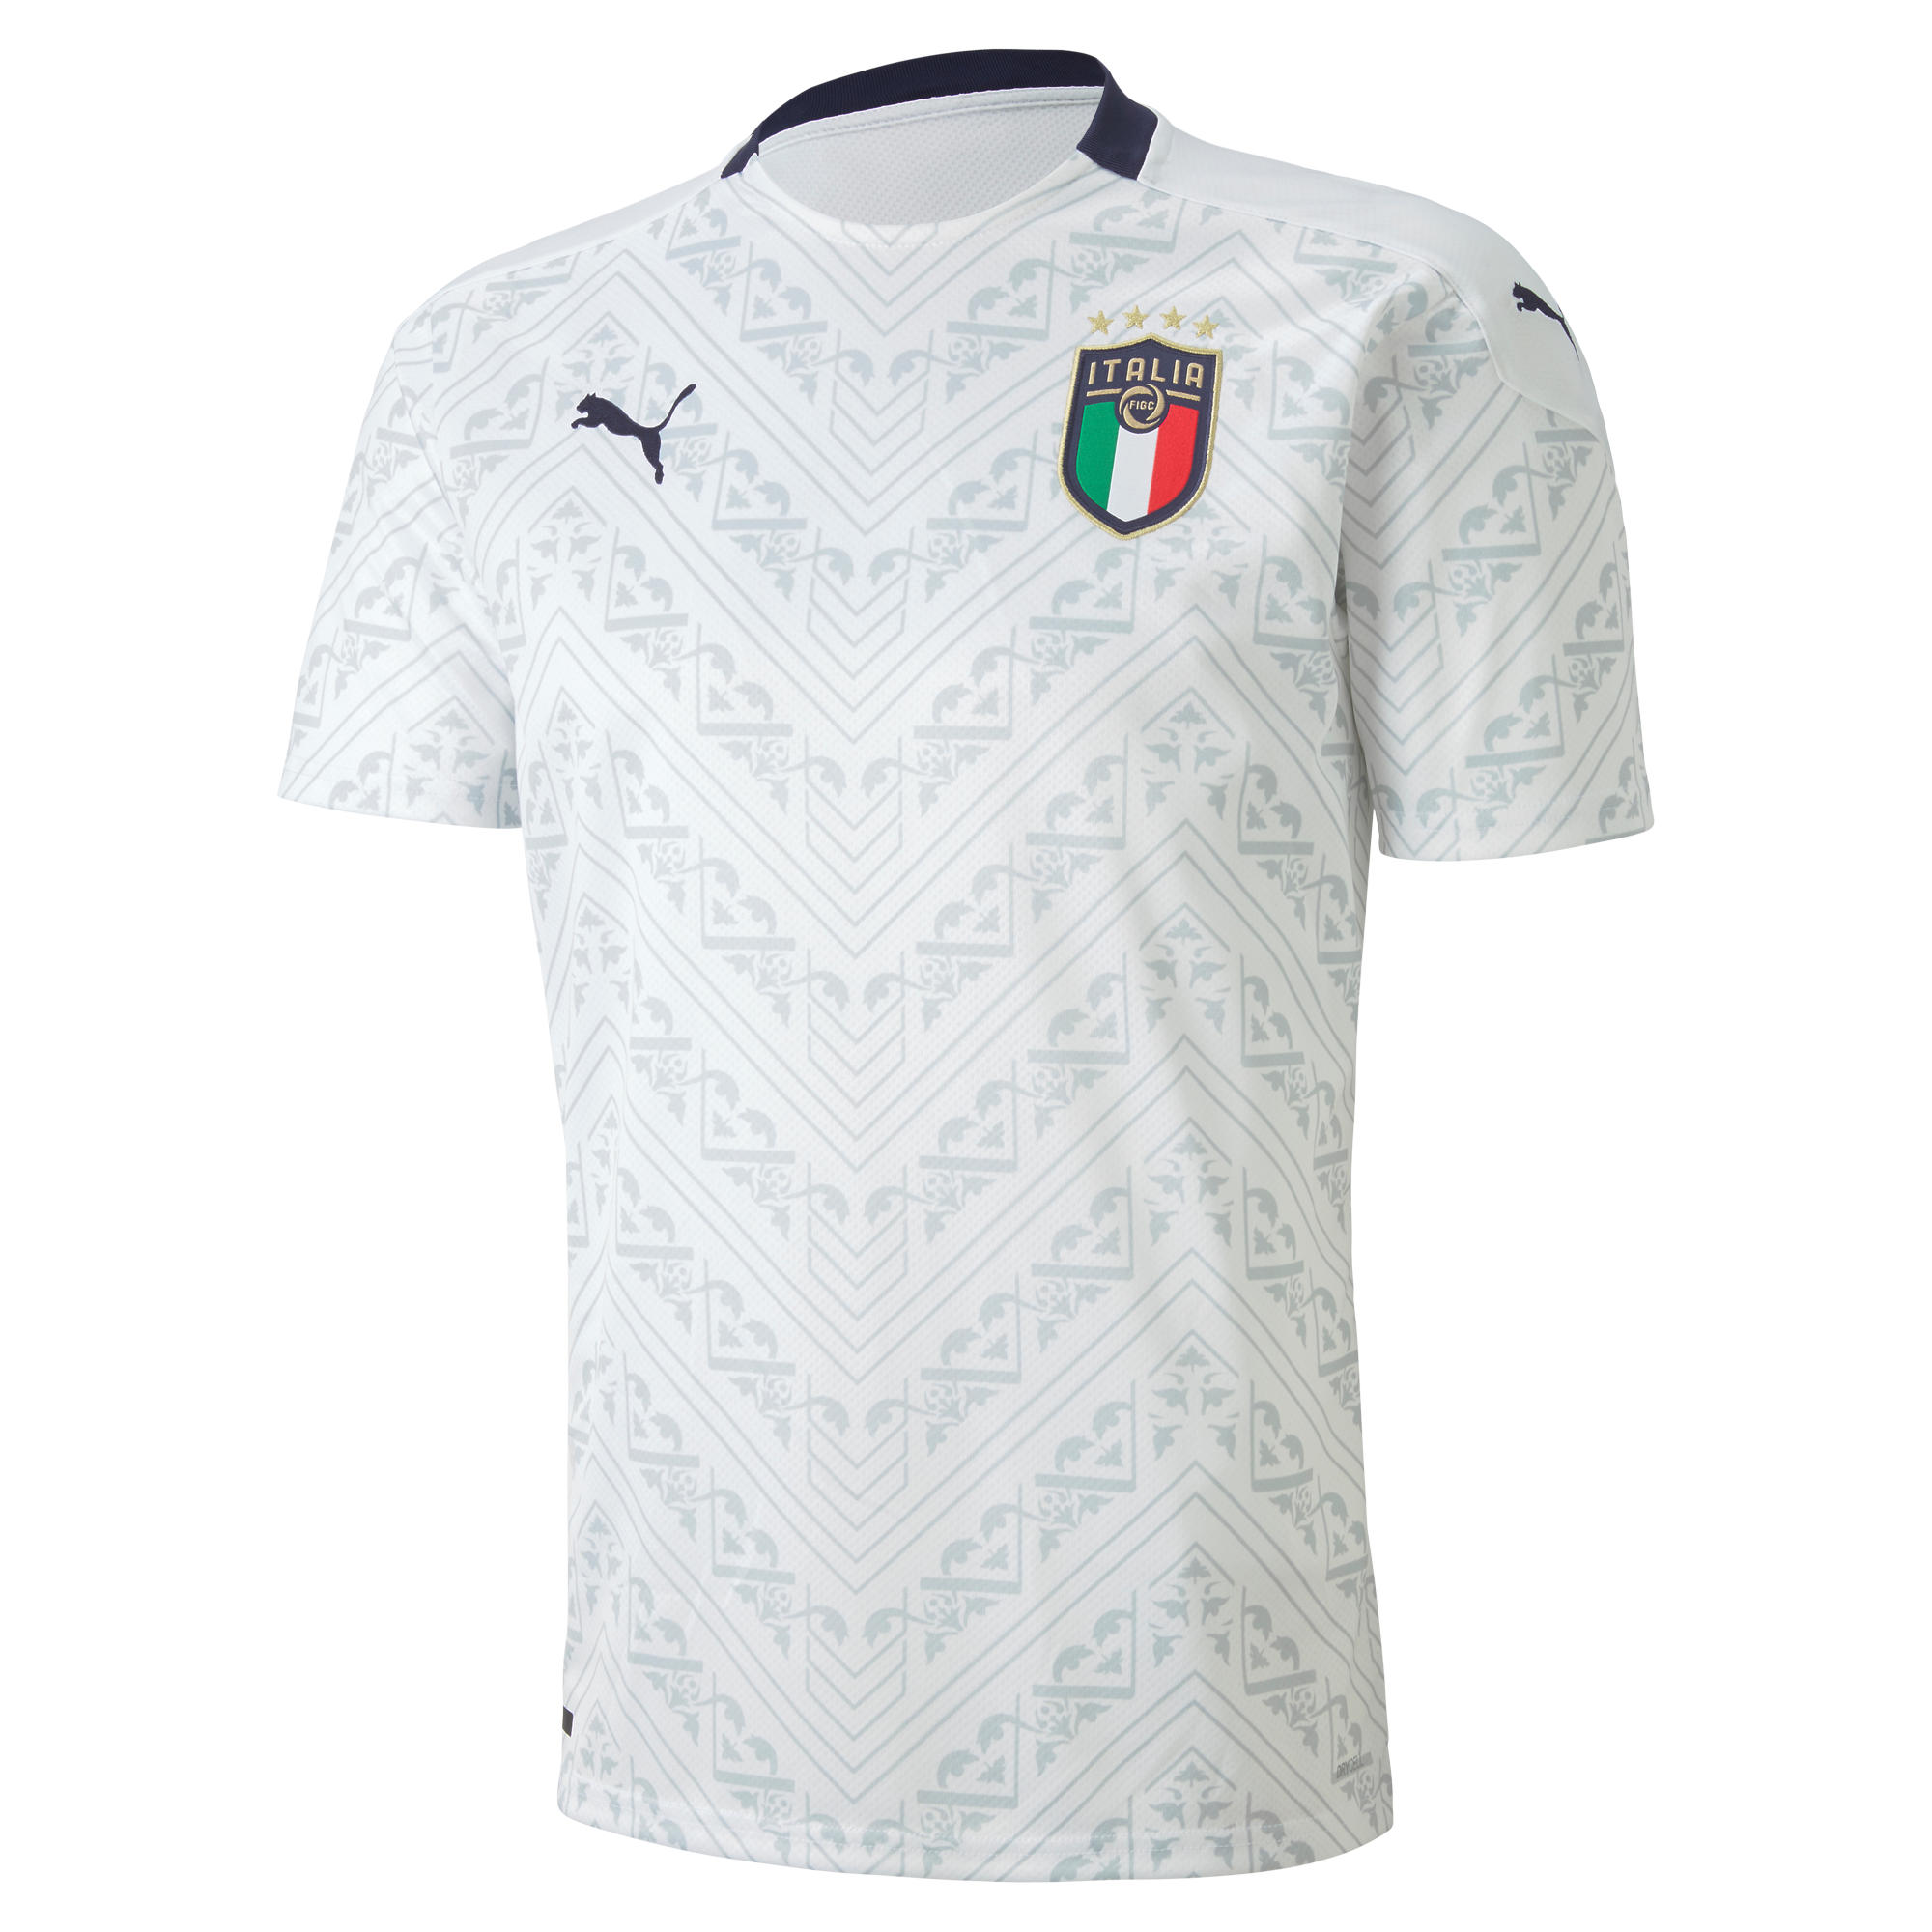 Tricou Fotbal Replică Italia imagine produs